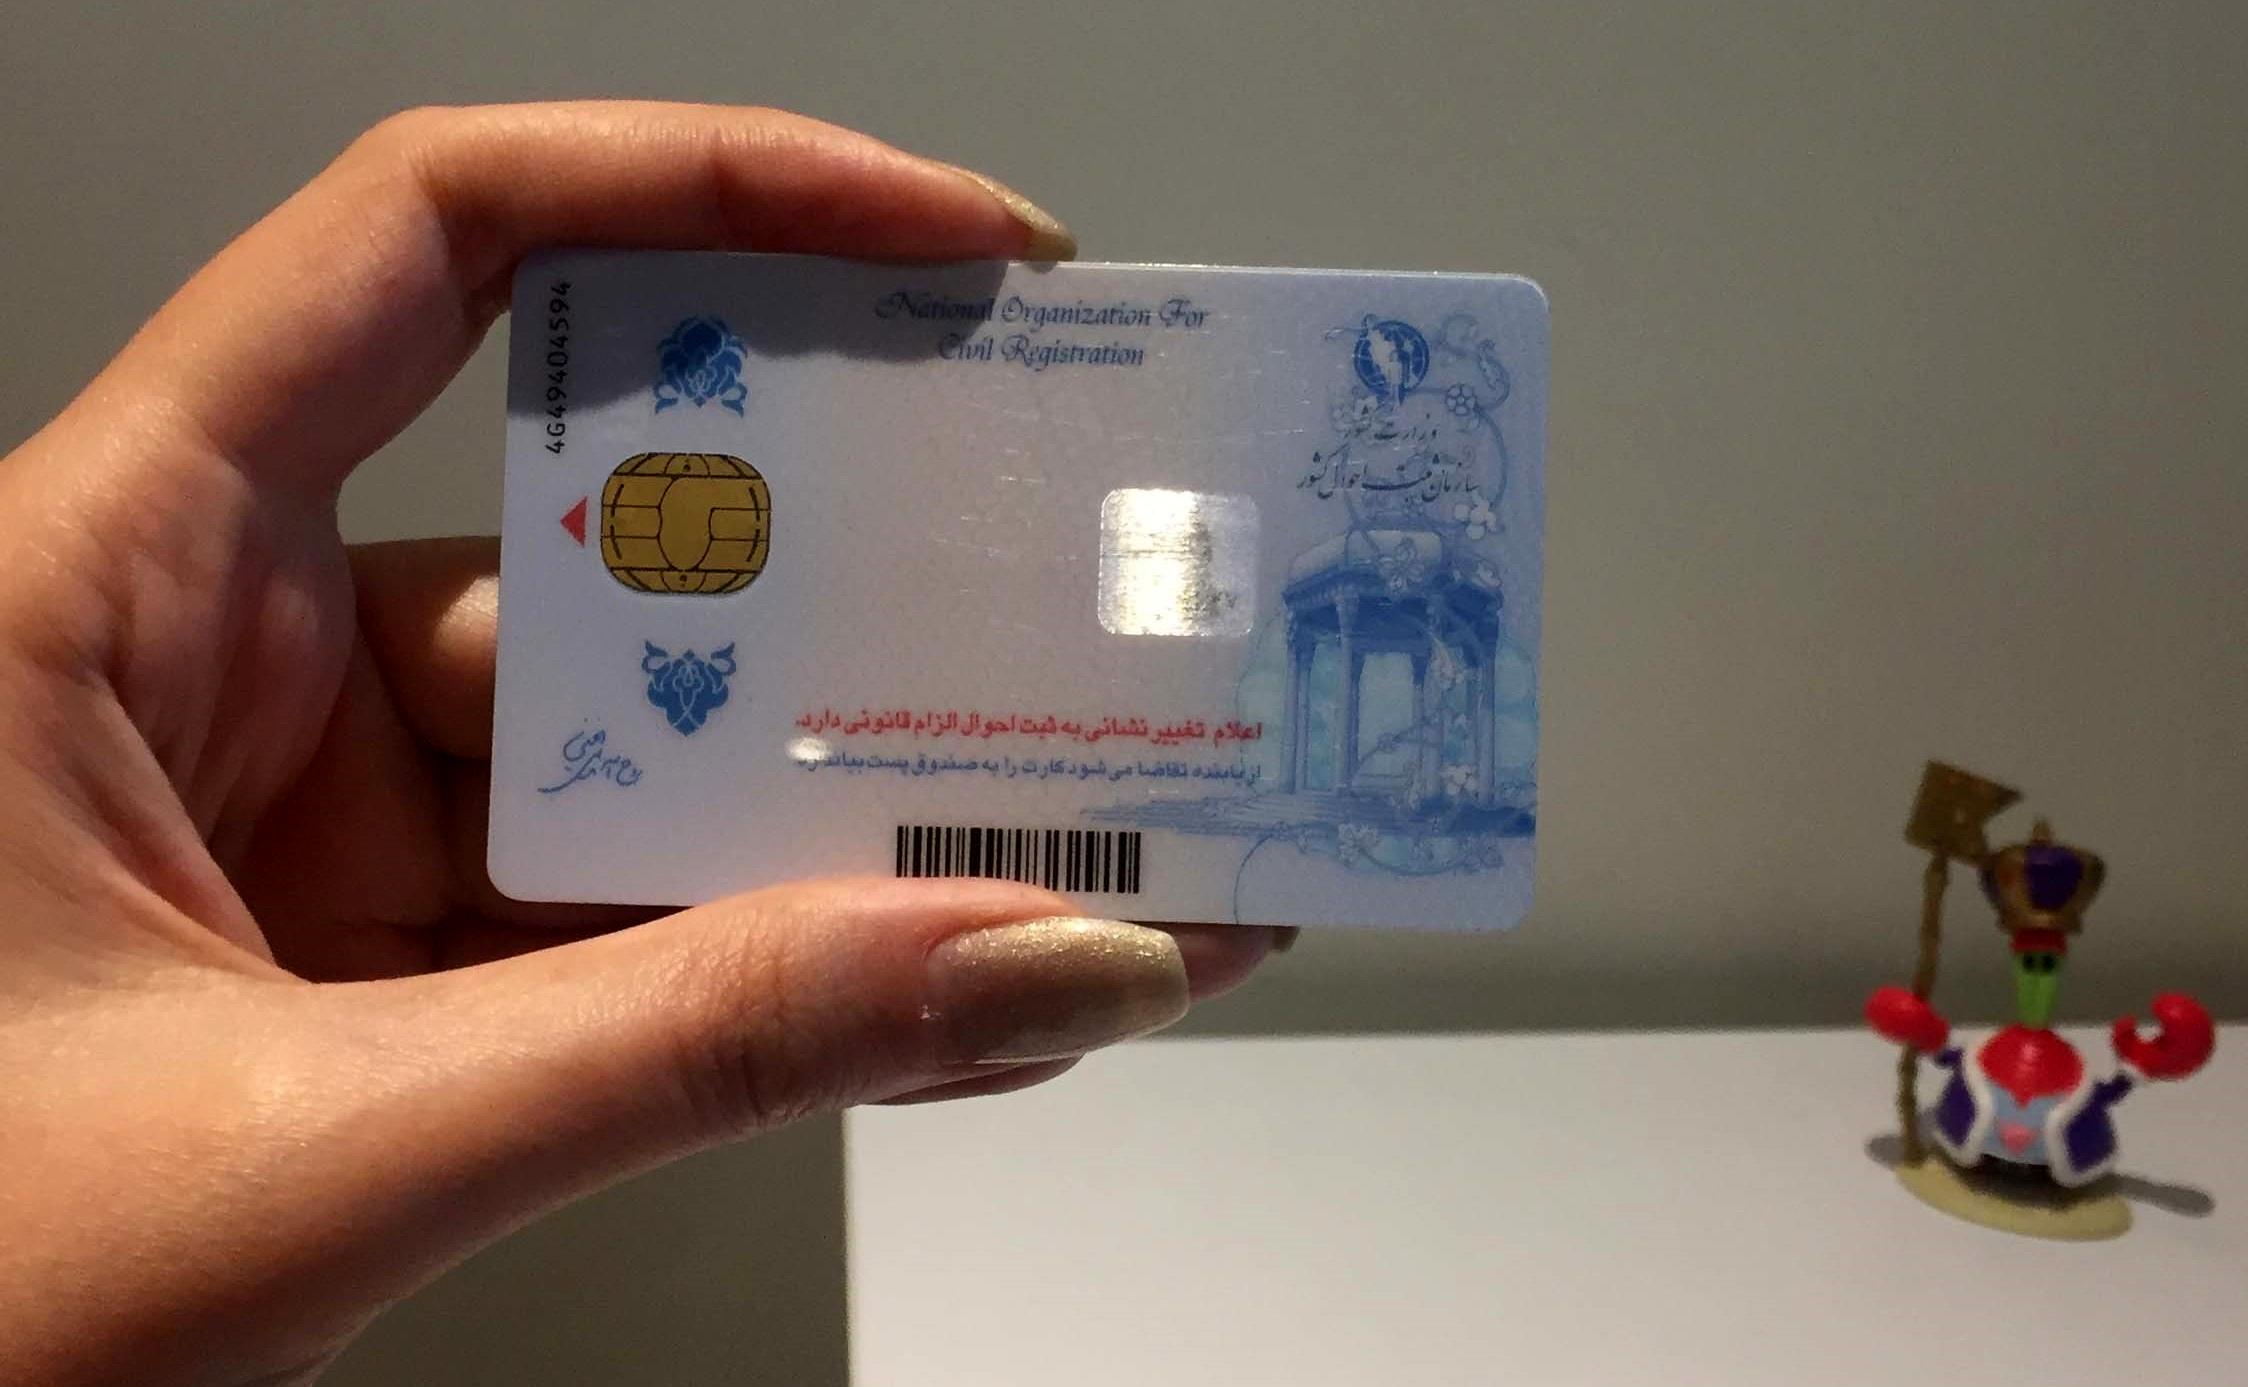  کارت ملی جایگزین کارت بانکی می شود /حذف تمام کارت های بانکی کلید خورد